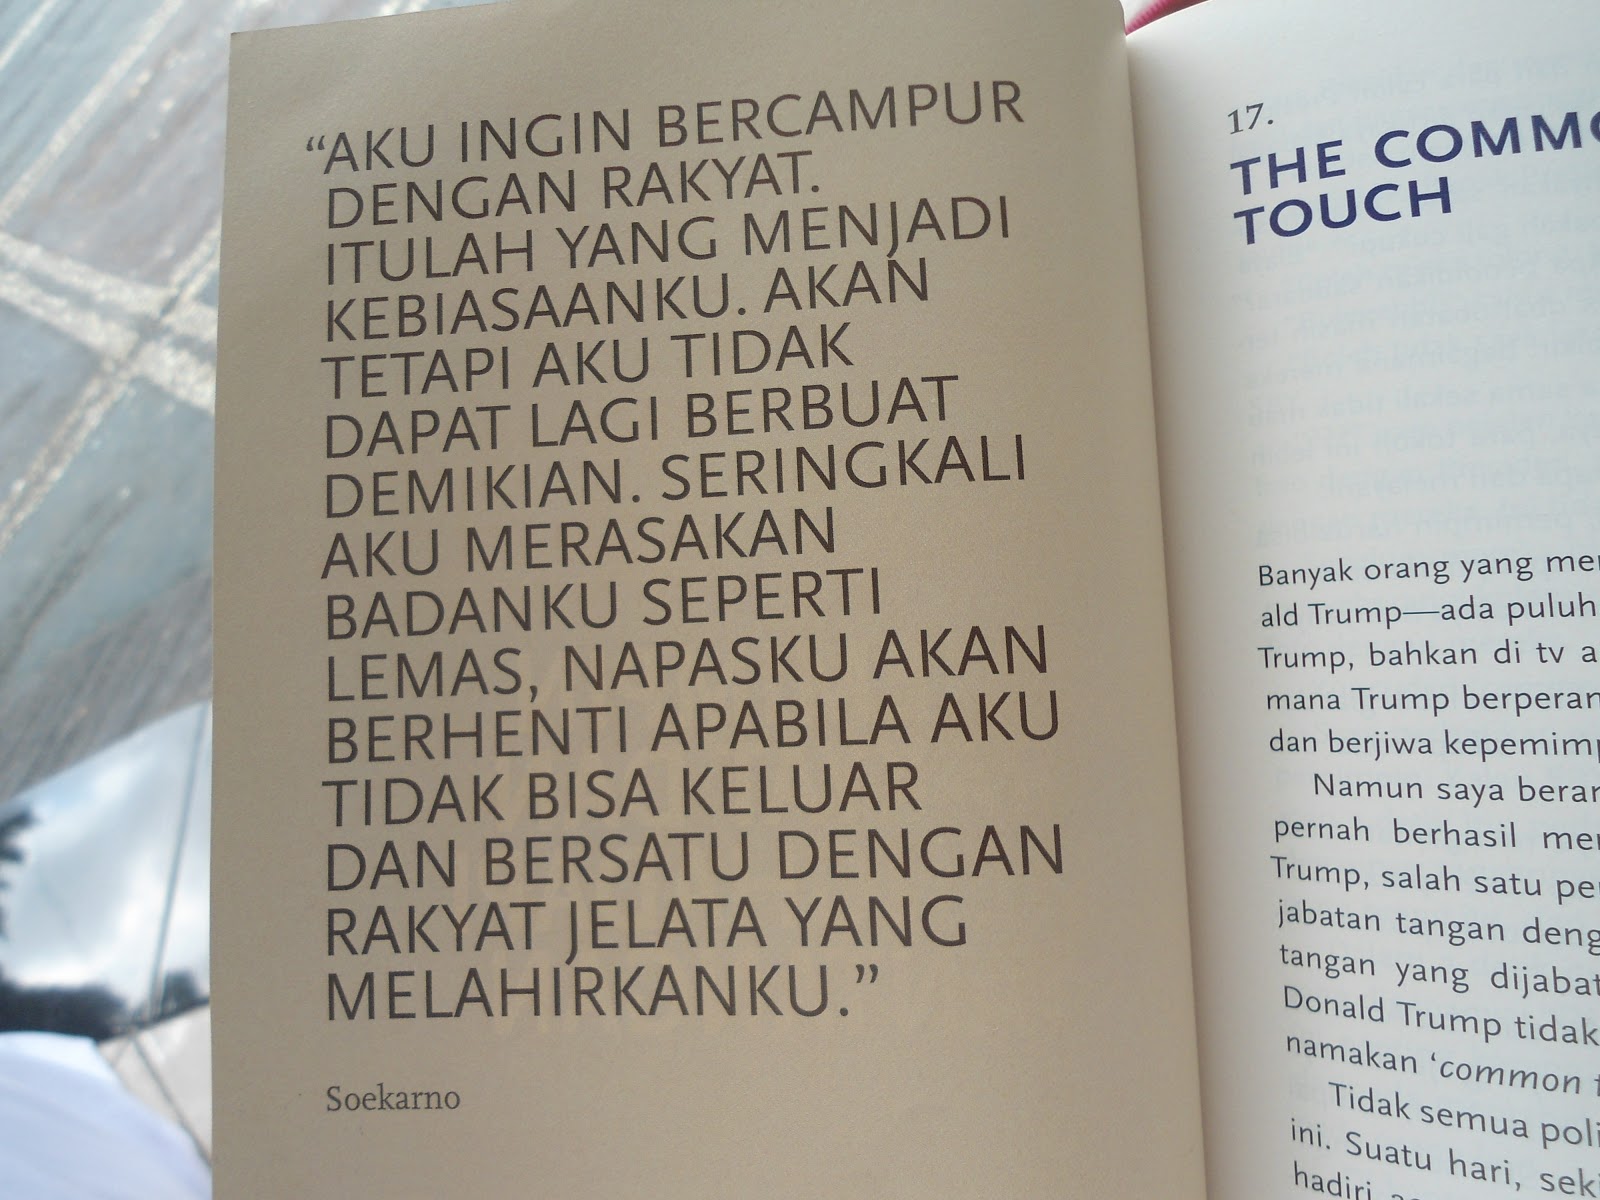 Quotes Kebangsaan dari Buku Pak SBY - Creatifina